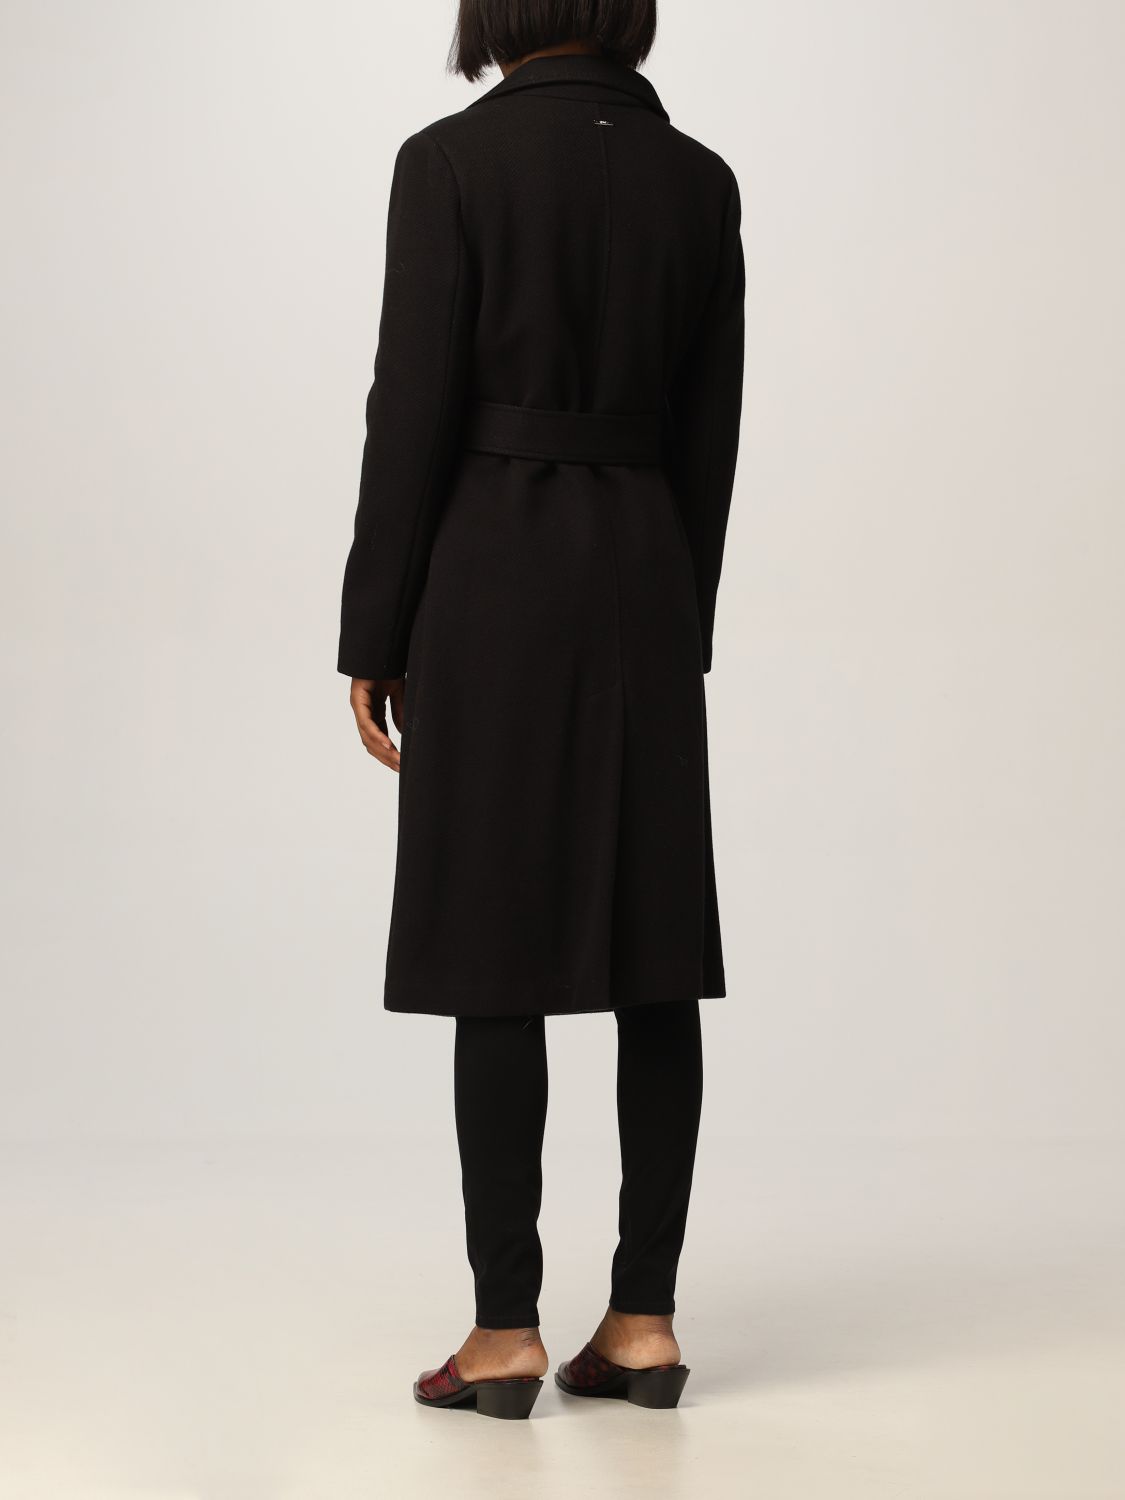 LIU JO: single-breasted coat in wool blend - Black | Liu Jo coat ...